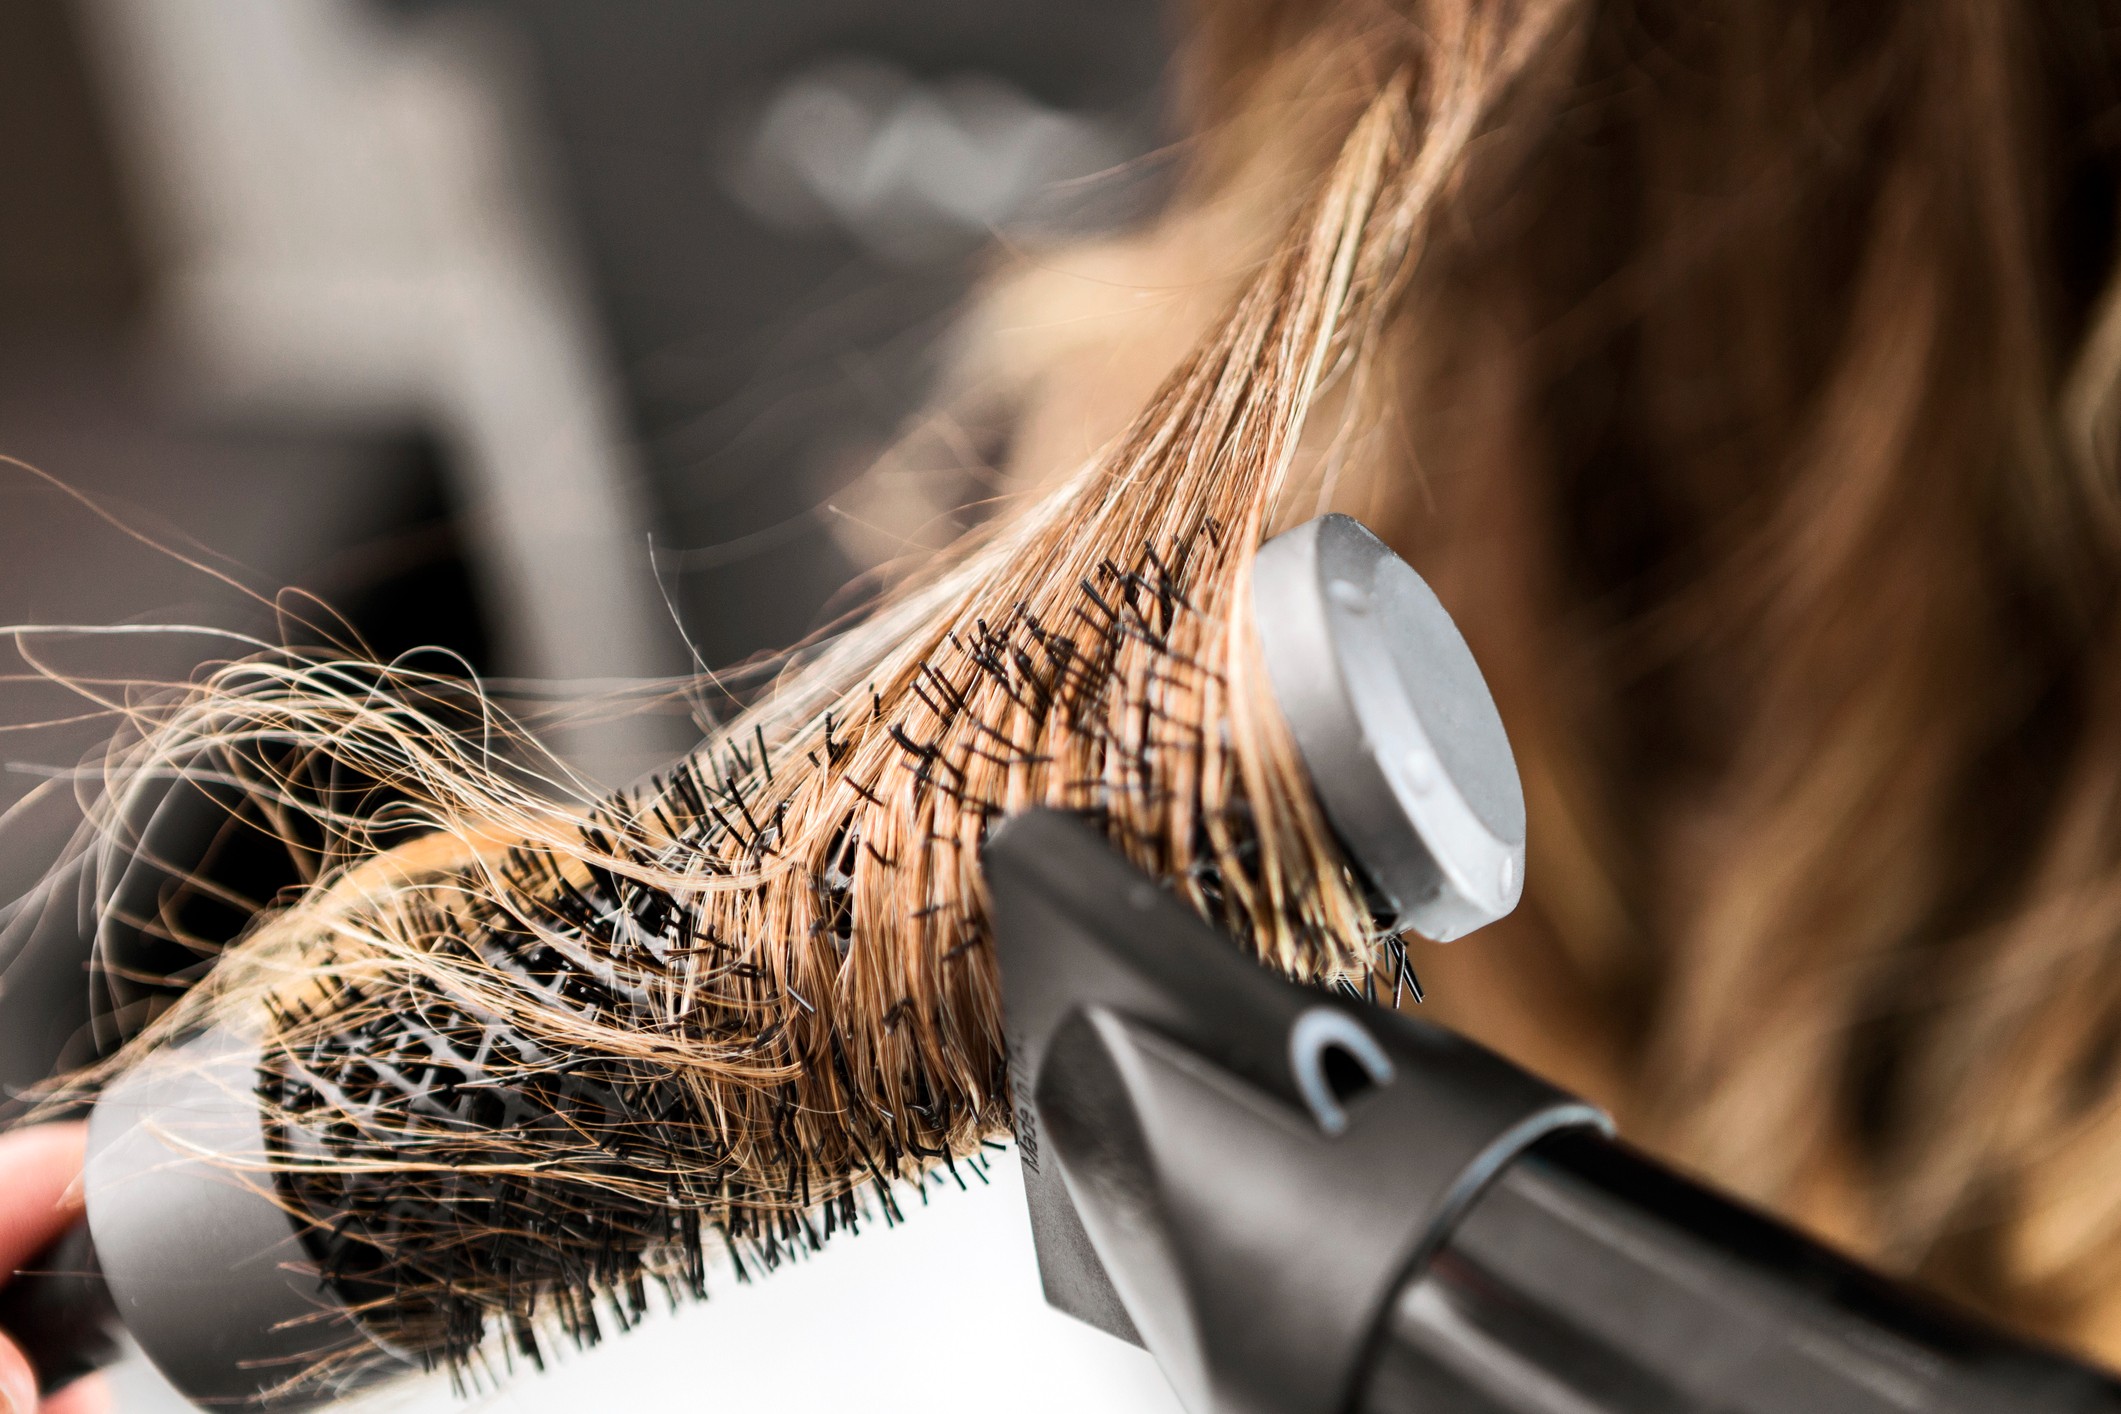 Tipos de escova de cabelo: saiba qual é a melhor para você